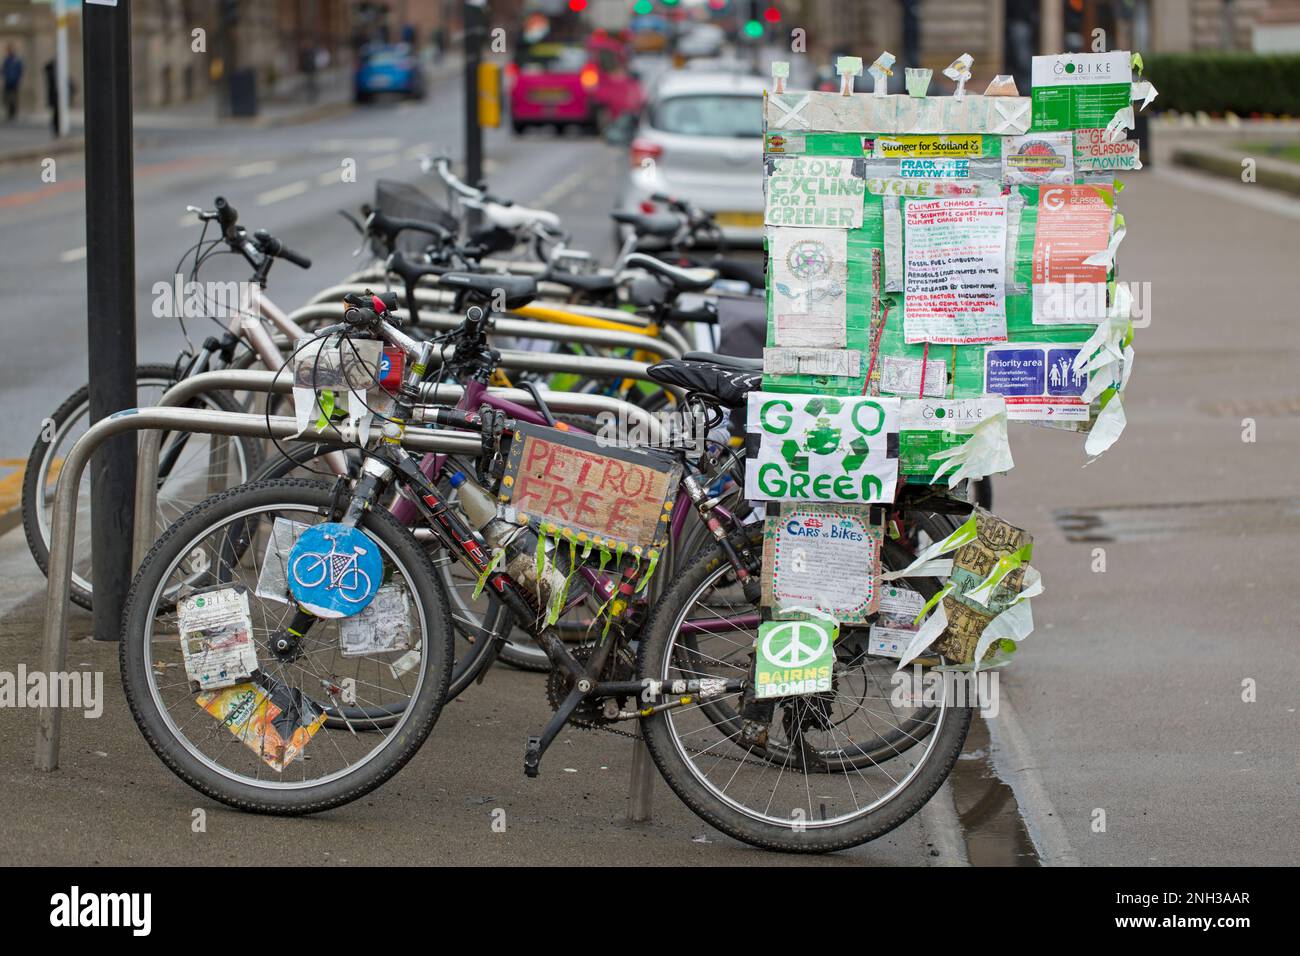 Une bicyclette avec des signes sur le changement climatique, l'environnement et les questions vertes, George Square, Glasgow, Écosse, Royaume-Uni, Europe Banque D'Images